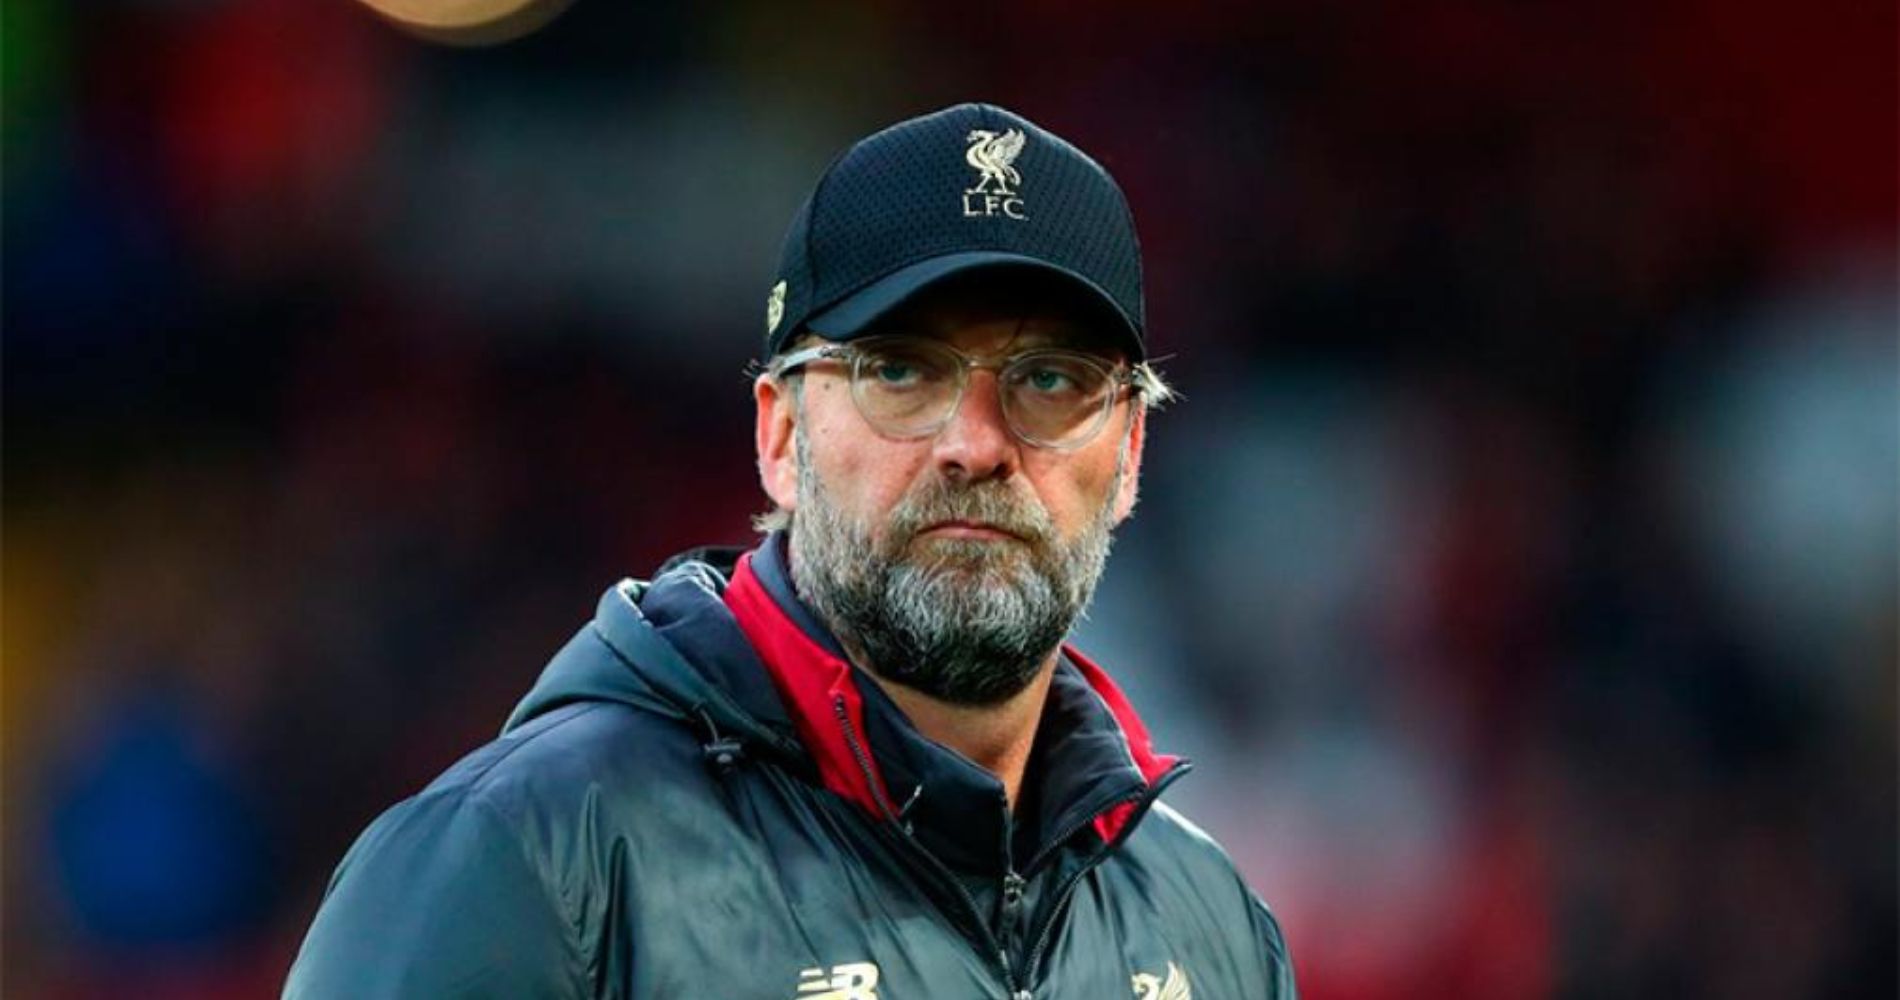 El alemán Jürgen Klopp anunció que dejará de ser entrenador del Liverpool